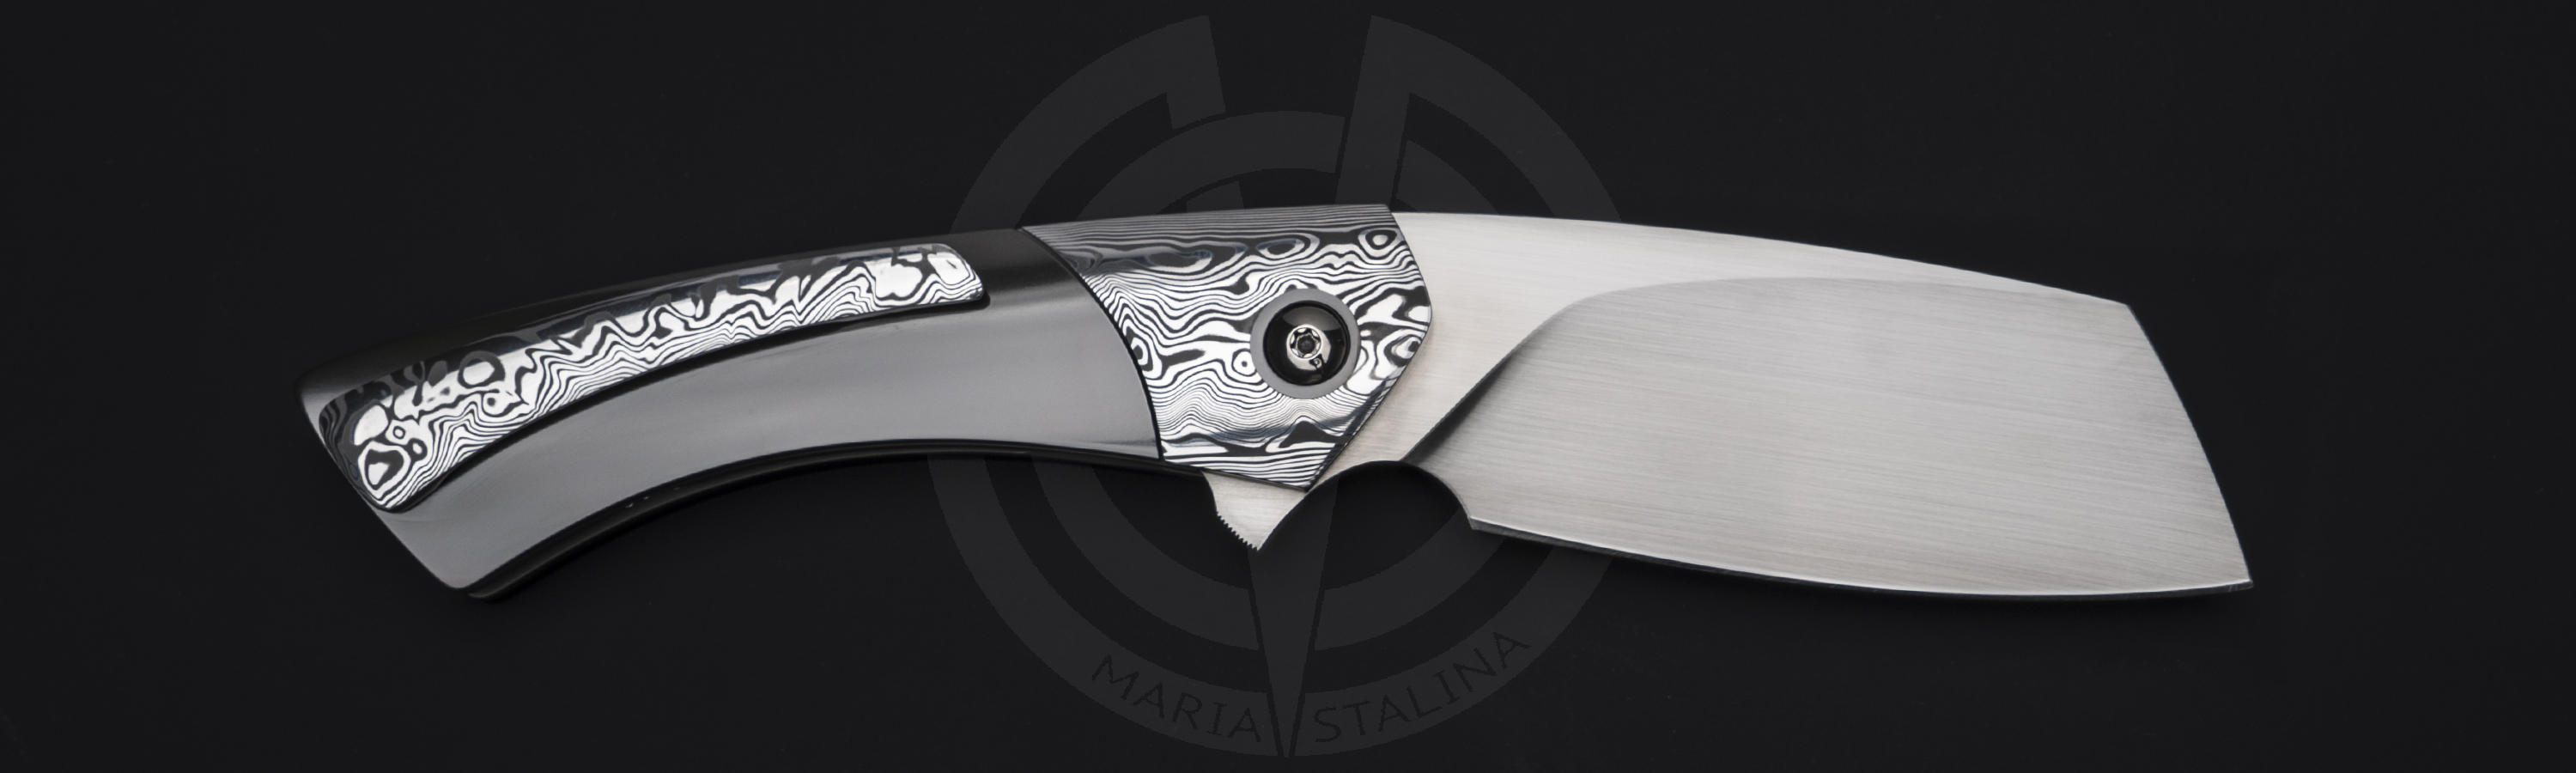 Steel RWL-34 Blade of Opiate knife